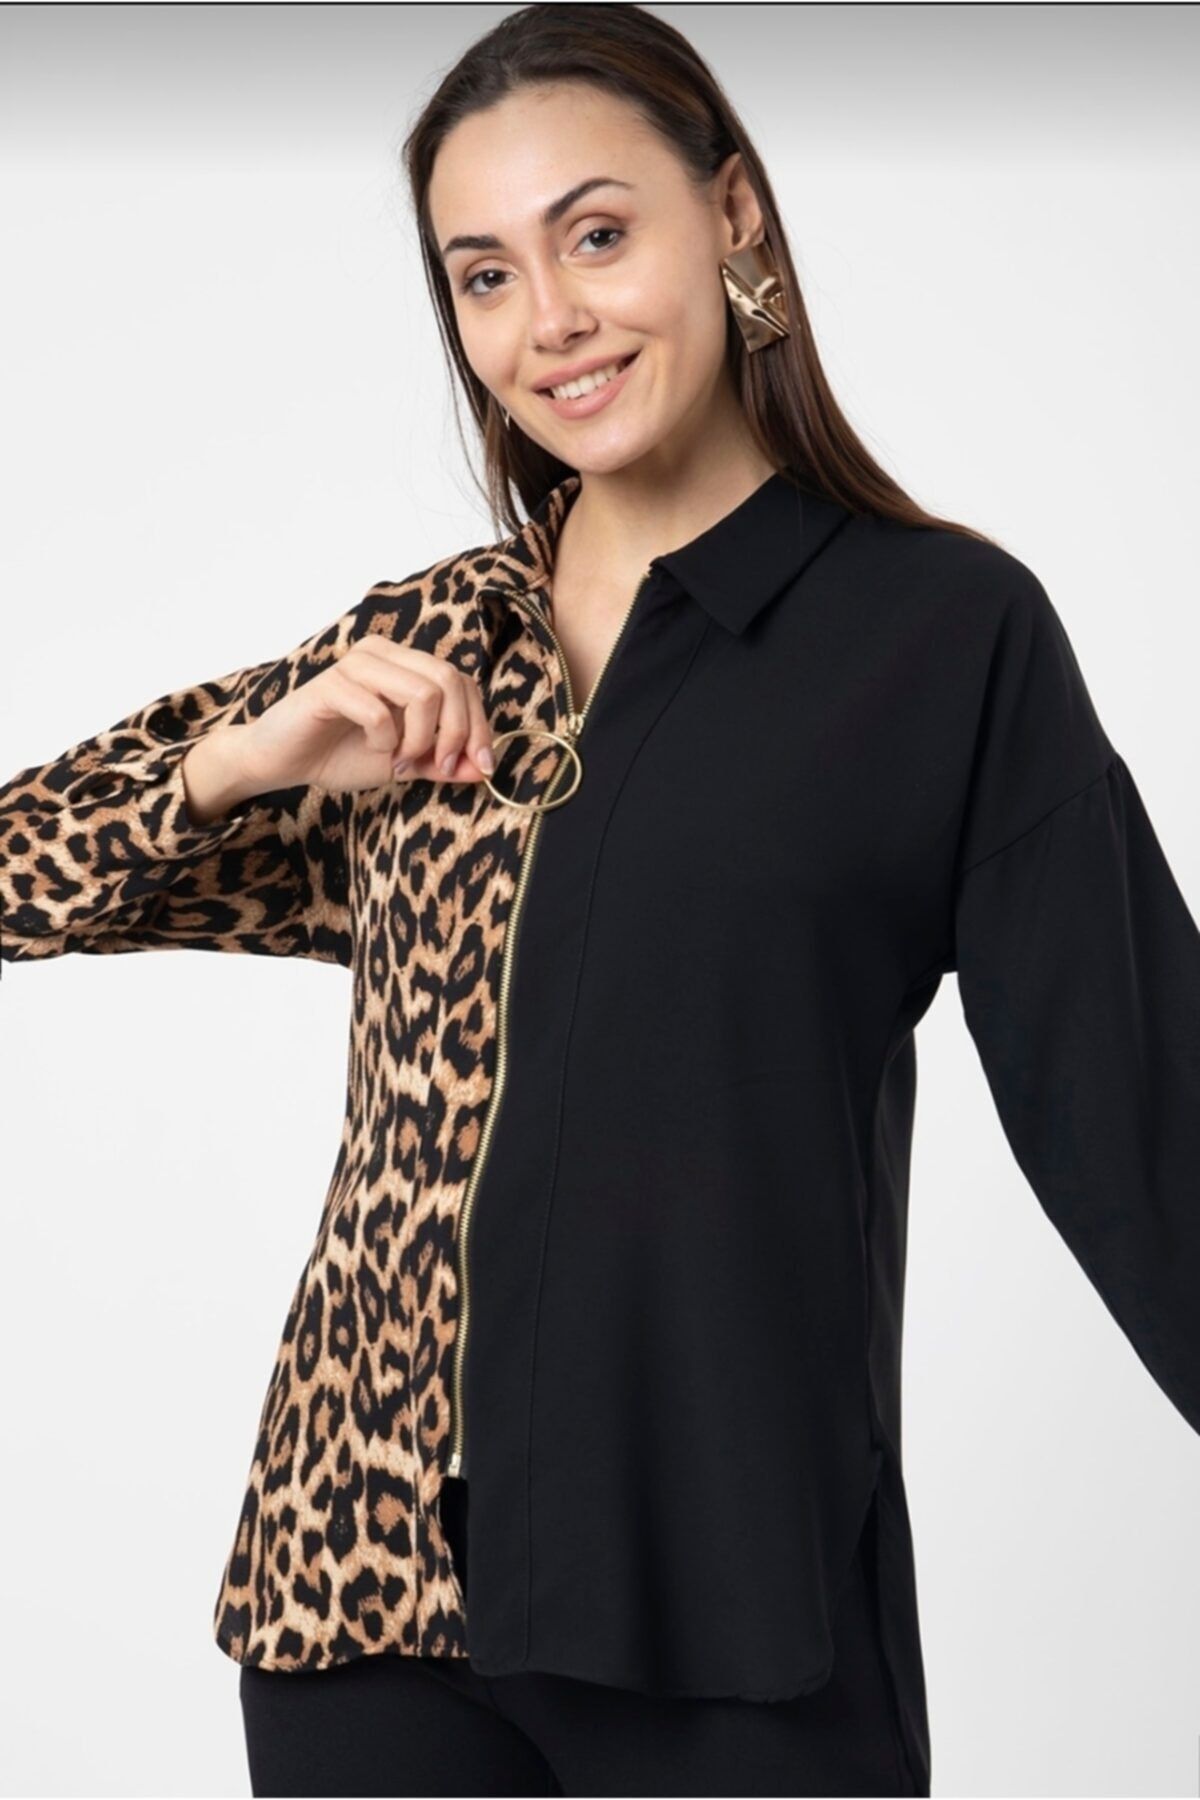 LionLuxeryStore Kadın Basic Business Gömlek Fiyatı, Yorumları - Trendyol